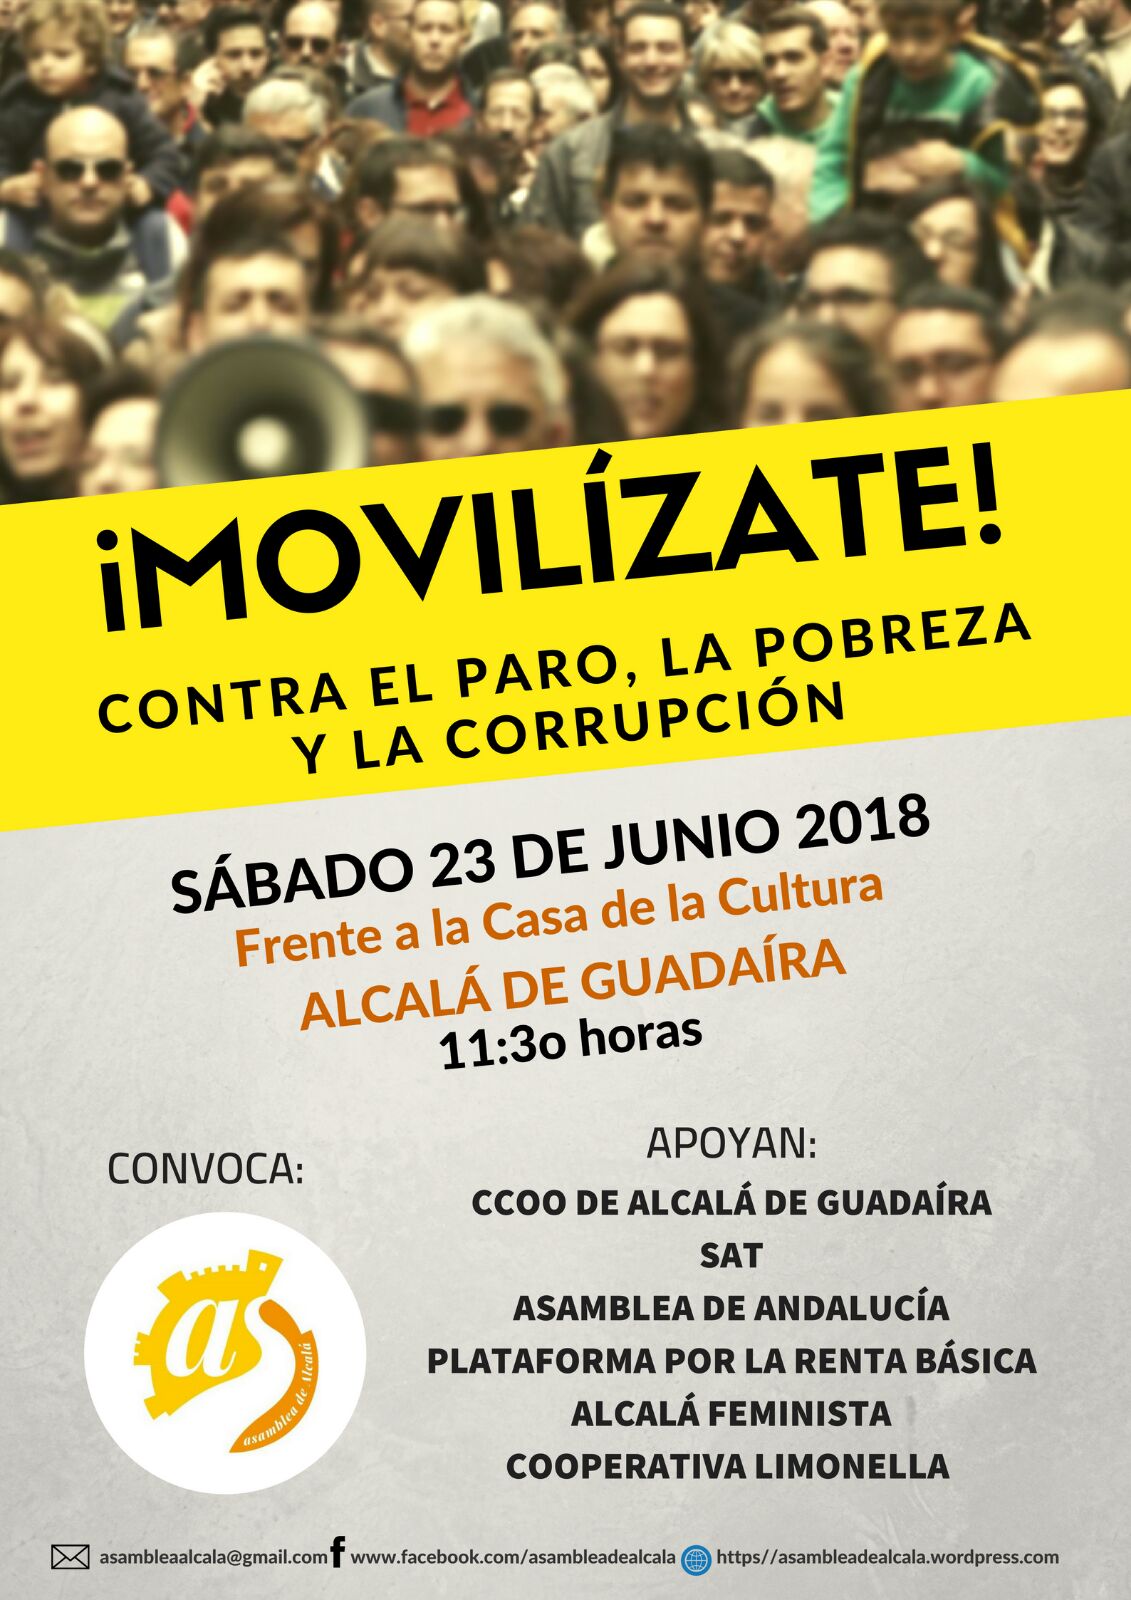 ¡MOVILIZATE! CONTRA EL PARO,LA POBREZA Y LA CORRUPCIÓN. Manifiesto y fotos de la manifestación.